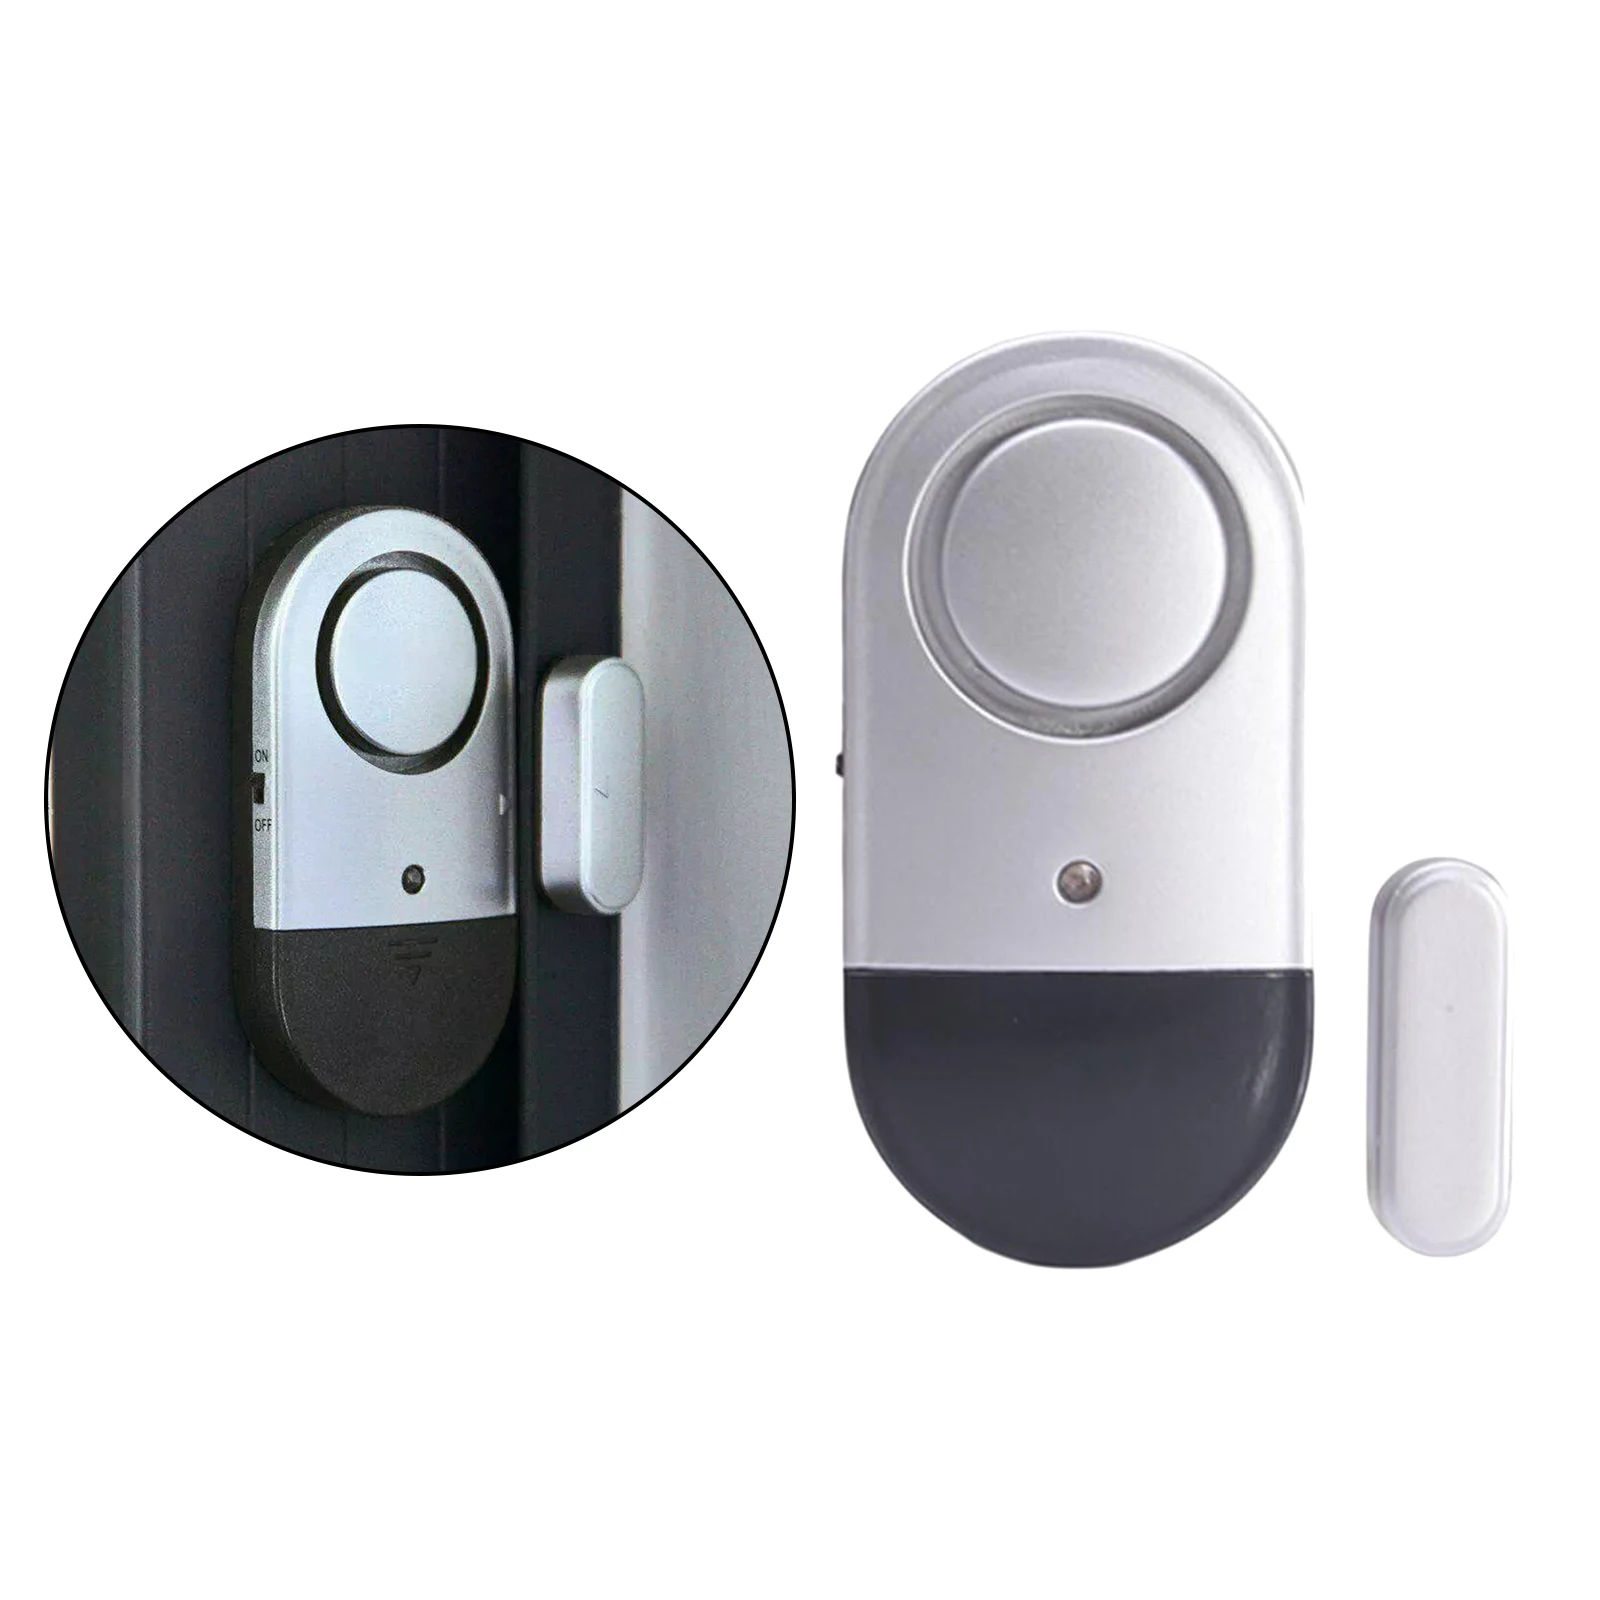 120DB Loud Door Window Open Alarm Sensor for Kids Wireless Security Alarms